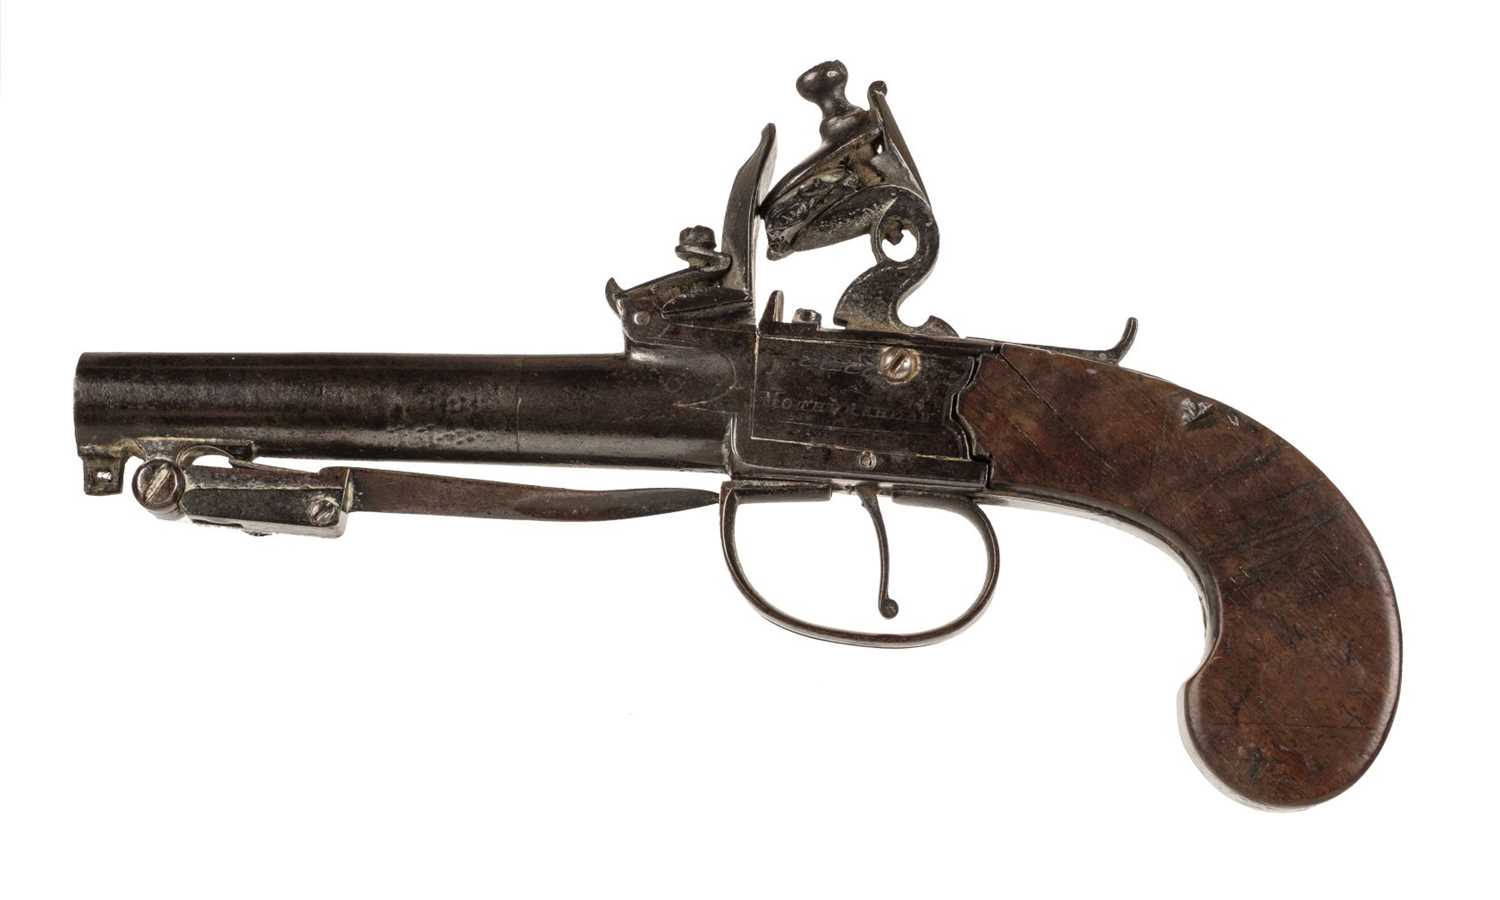 Lot 5 - Pistol. An early 19th century flintlock travelling pistoln by Mothers Head